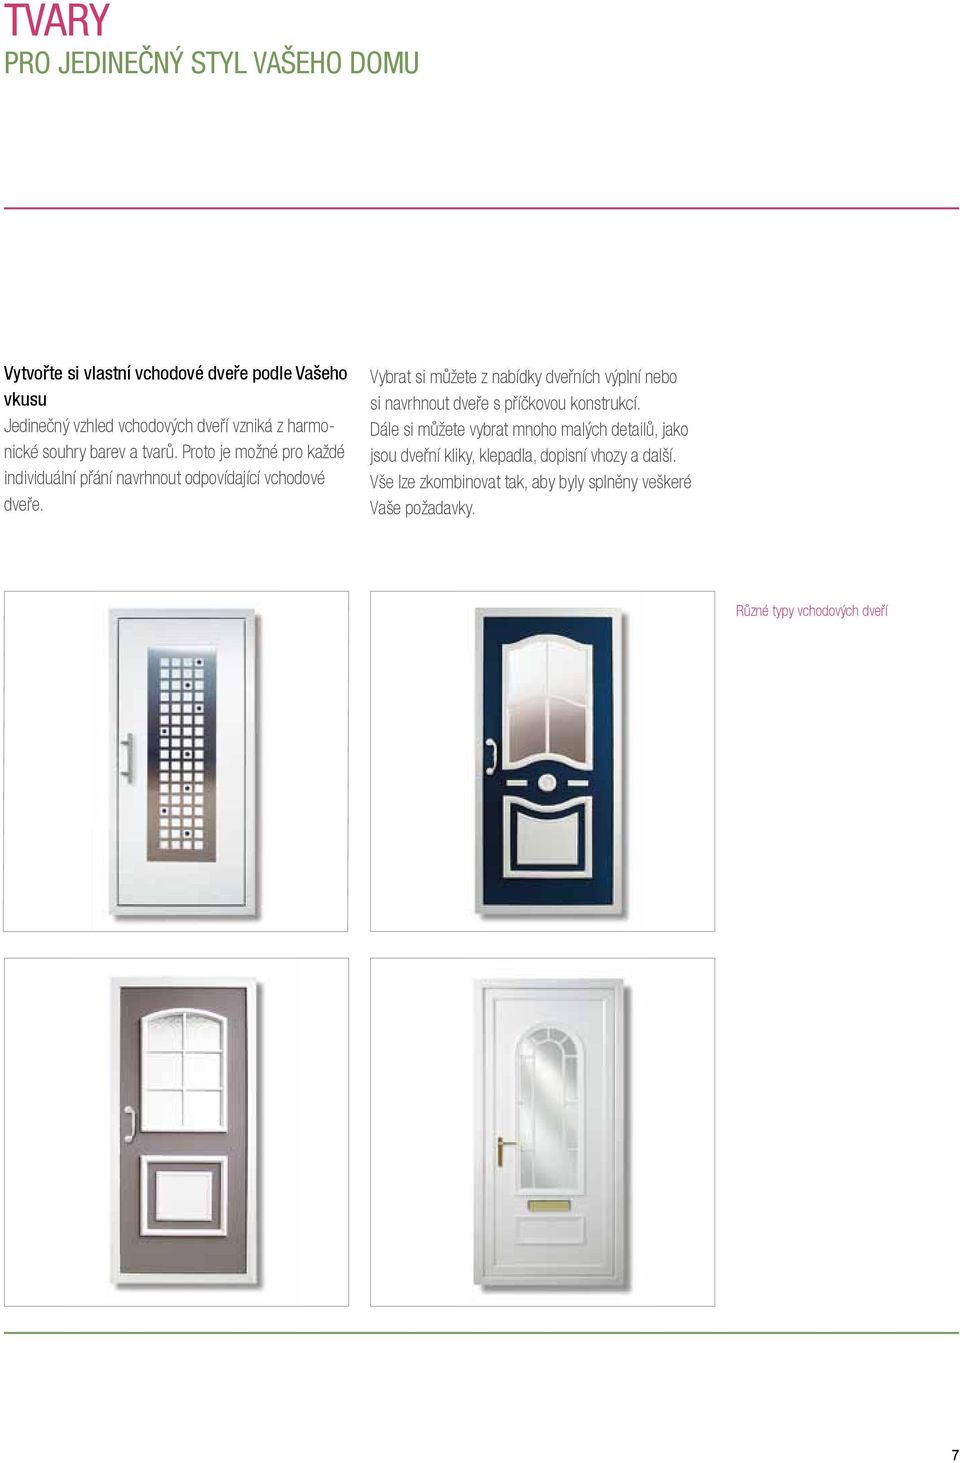 Vybrat si můžete z nabídky dveřních výplní nebo si navrhnout dveře s příčkovou konstrukcí.